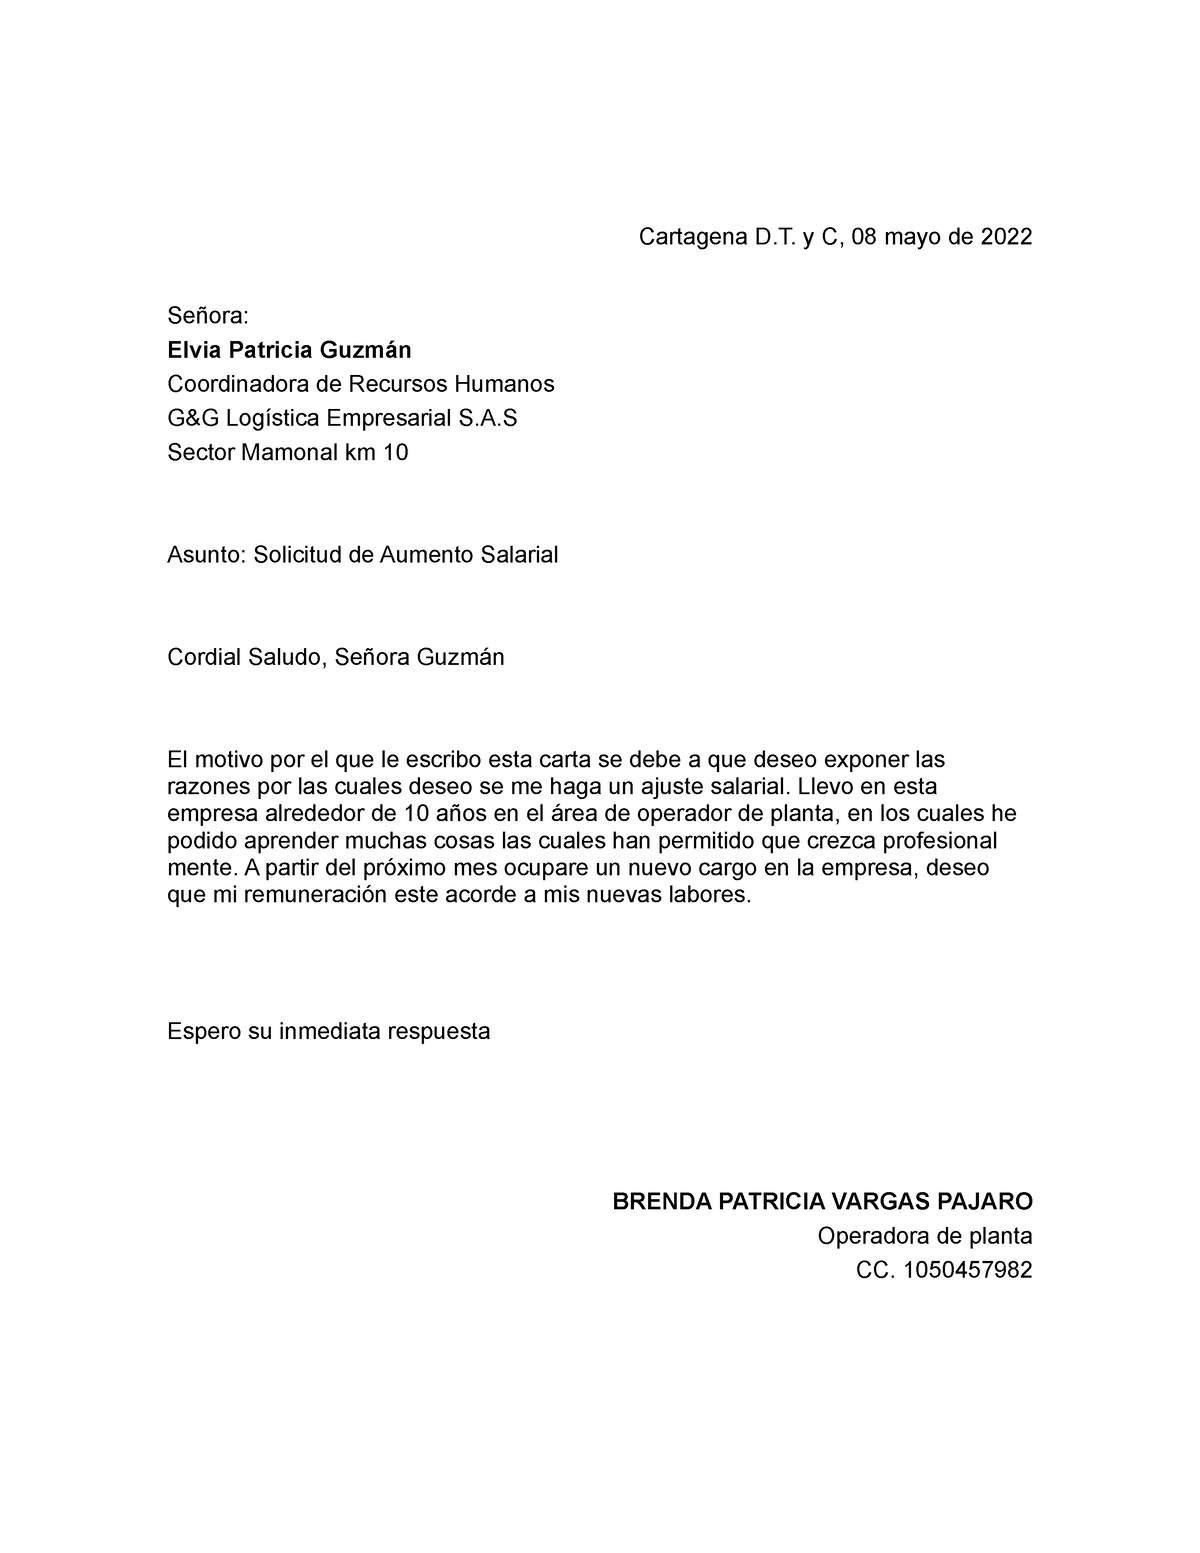 Carta Aumento Salarial Estio Bloque Cartagena D. y C, 08 mayo de 2022